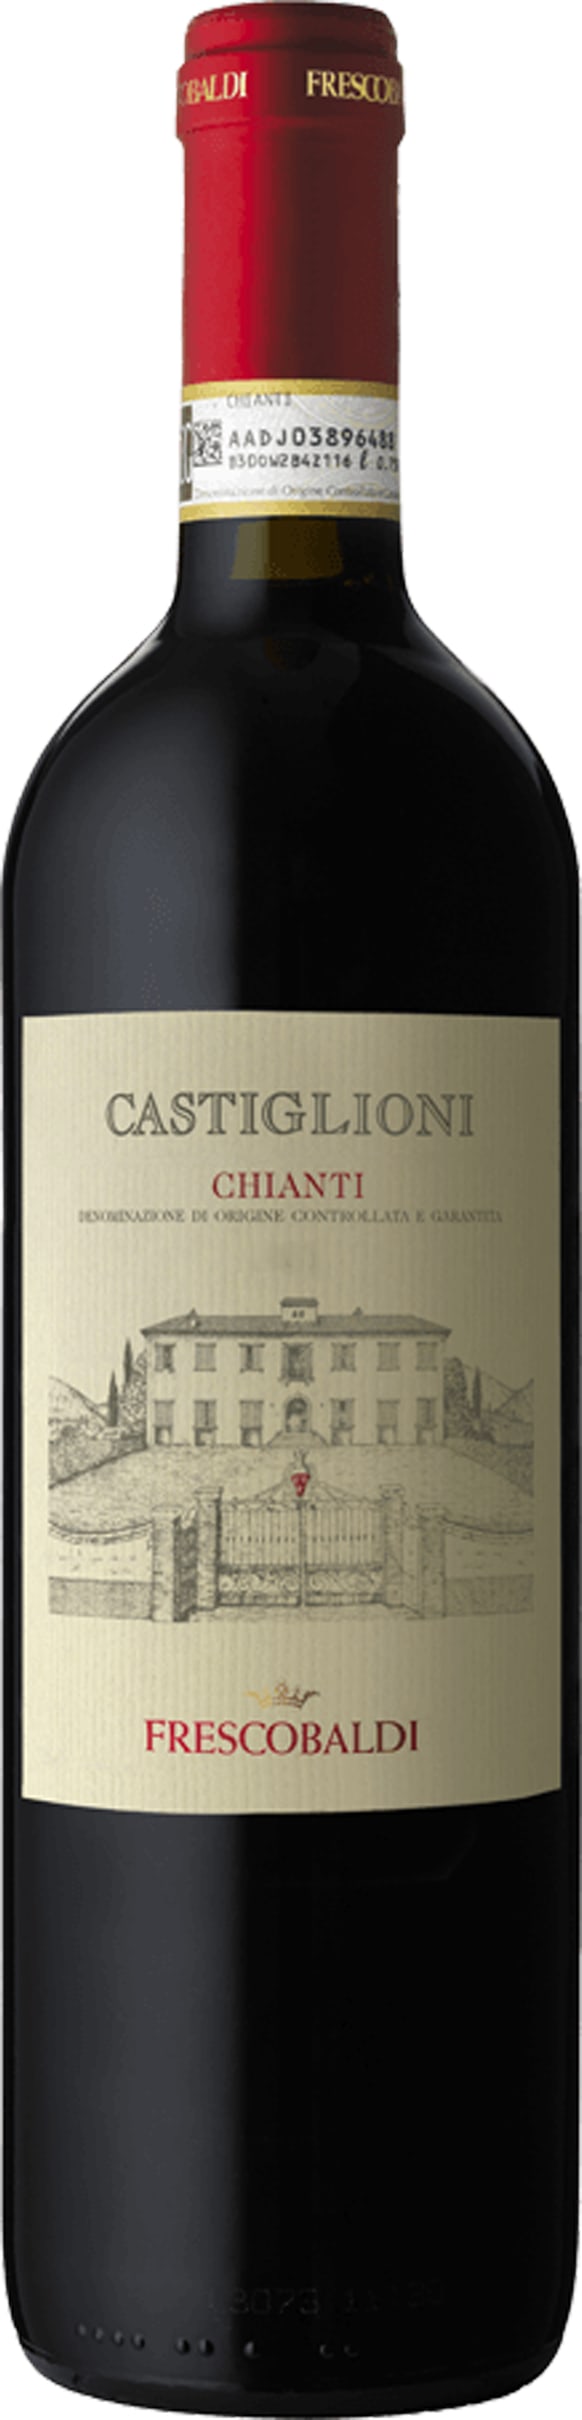 Frescobaldi Castiglioni Chianti 2022 75cl - Buy Frescobaldi Wines from GREAT WINES DIRECT wine shop